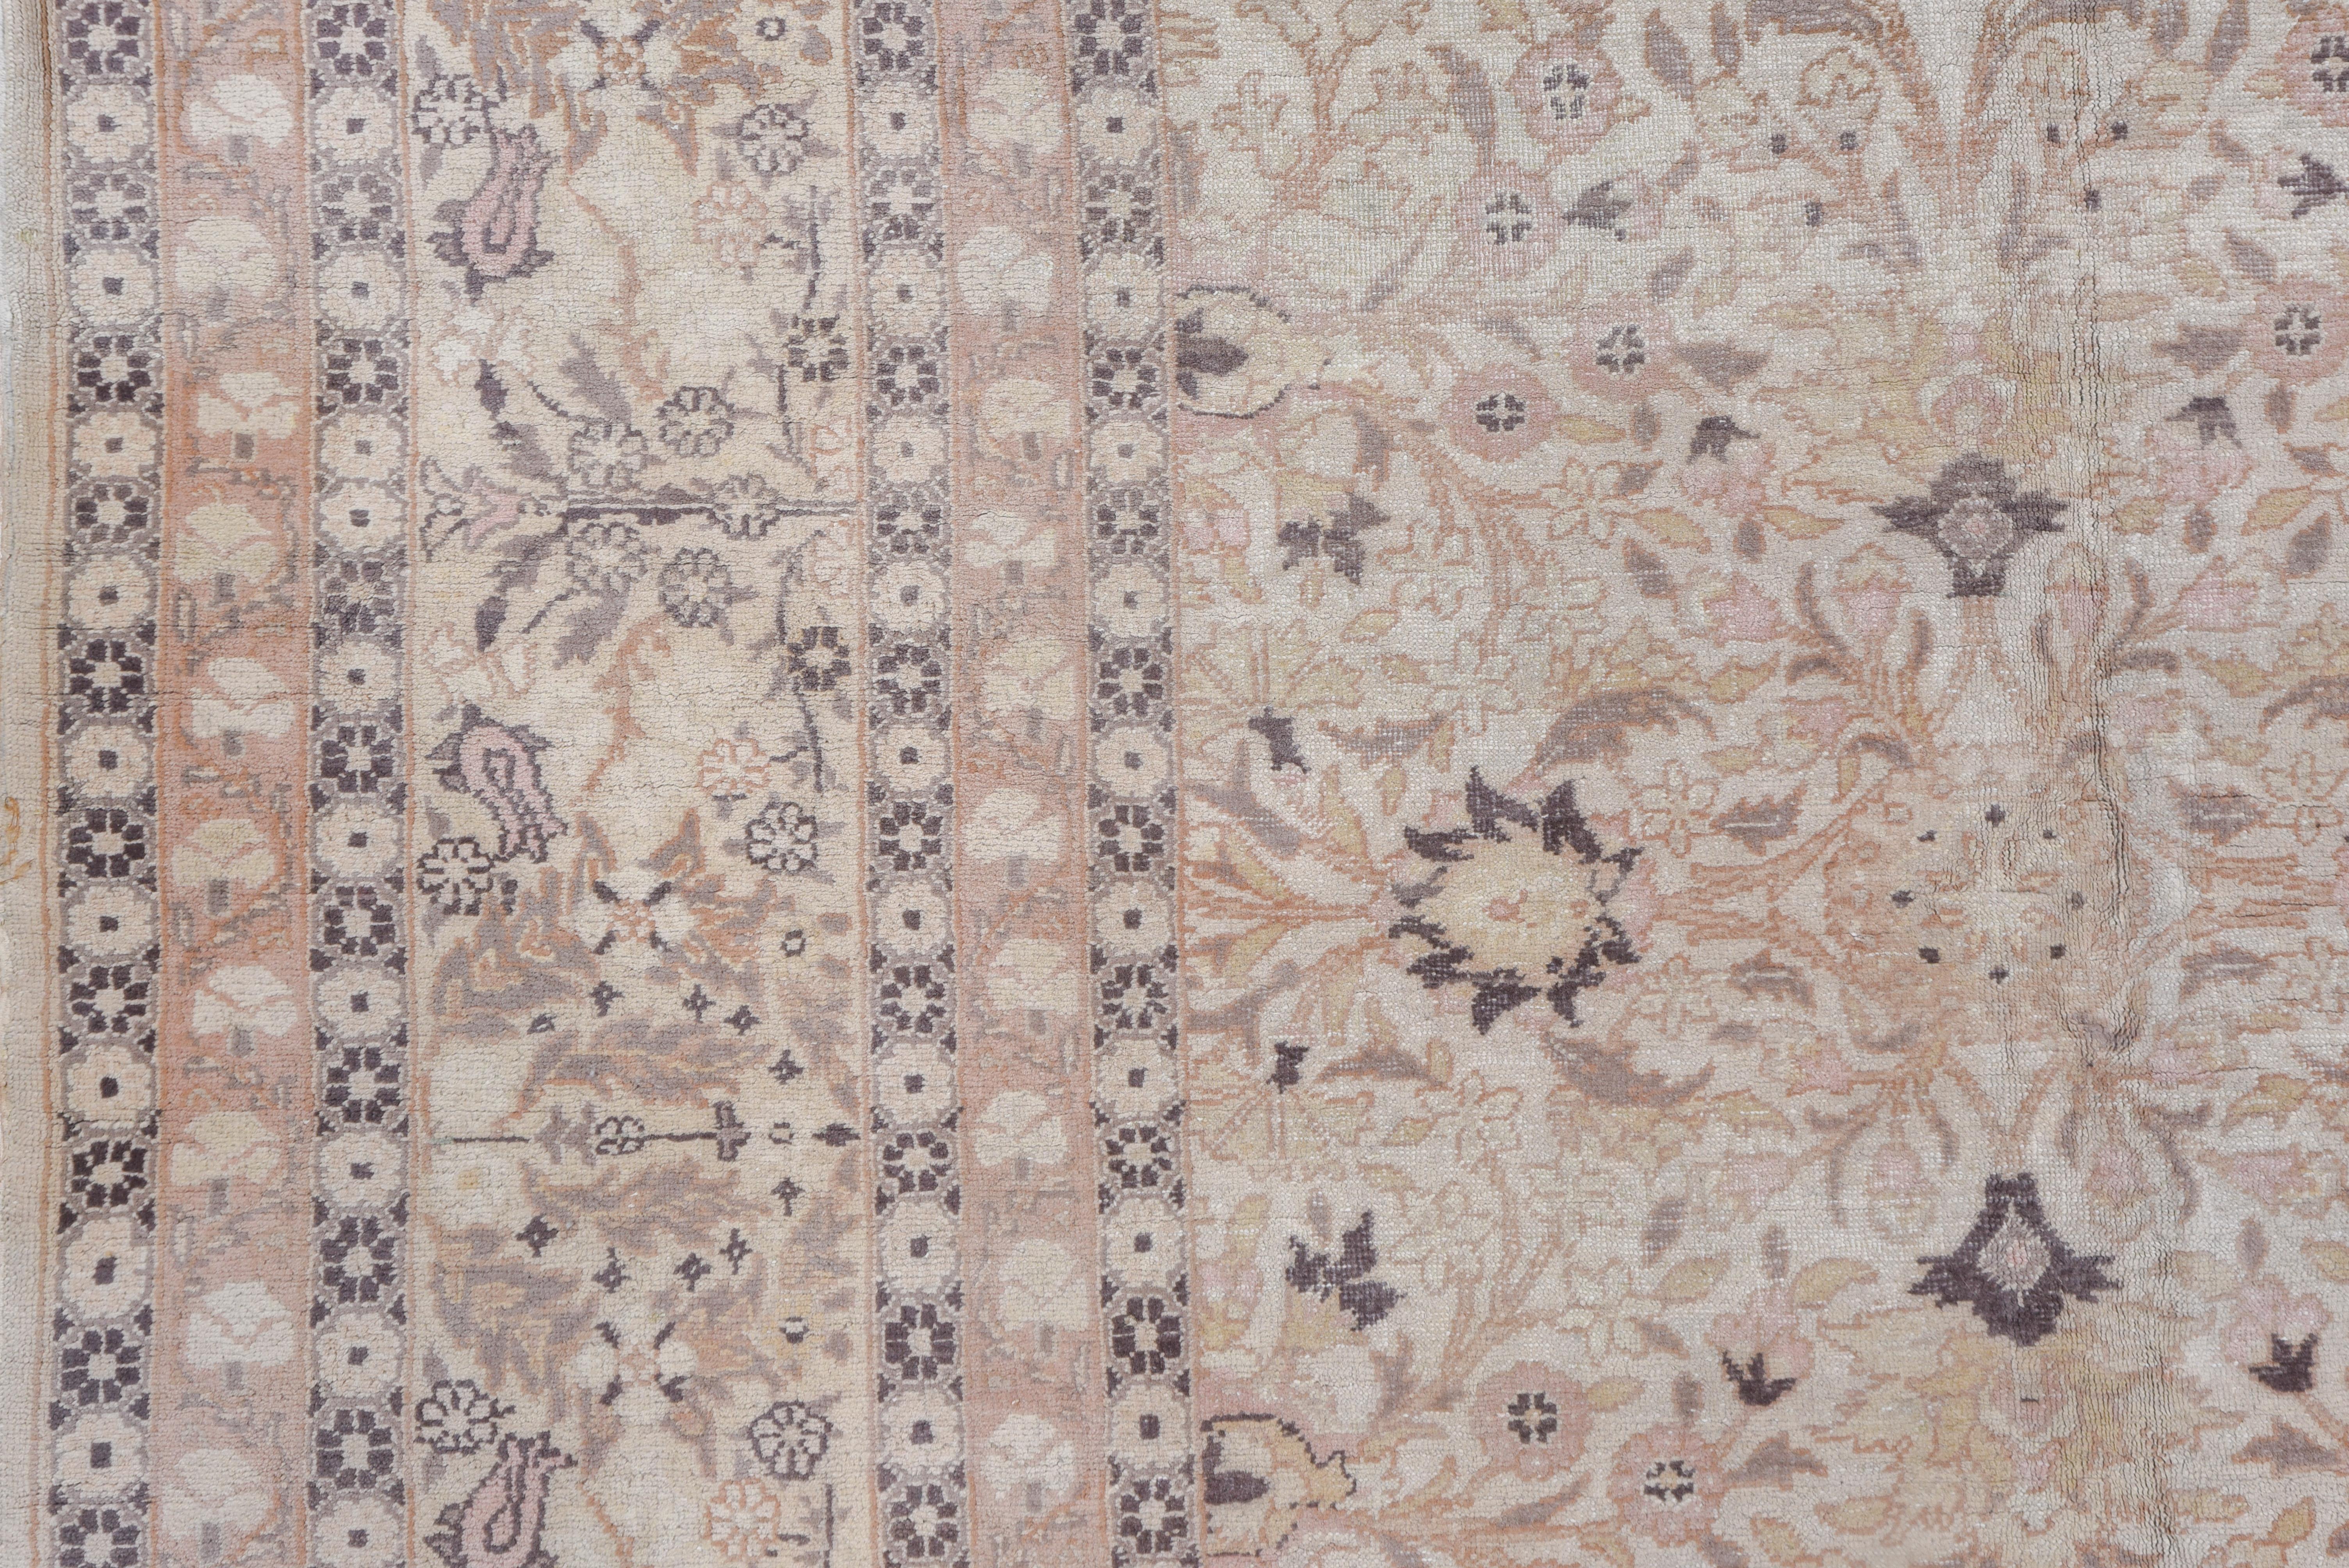 Le champ ivoire de ce tapis antique urbain de l'ouest turc présente un motif central en quatre parties de palmettes à pétales aigus, de tulipes, de gerbes de fleurs et de vignobles détaillés dans des tons plus clairs correspondants, avec une bordure